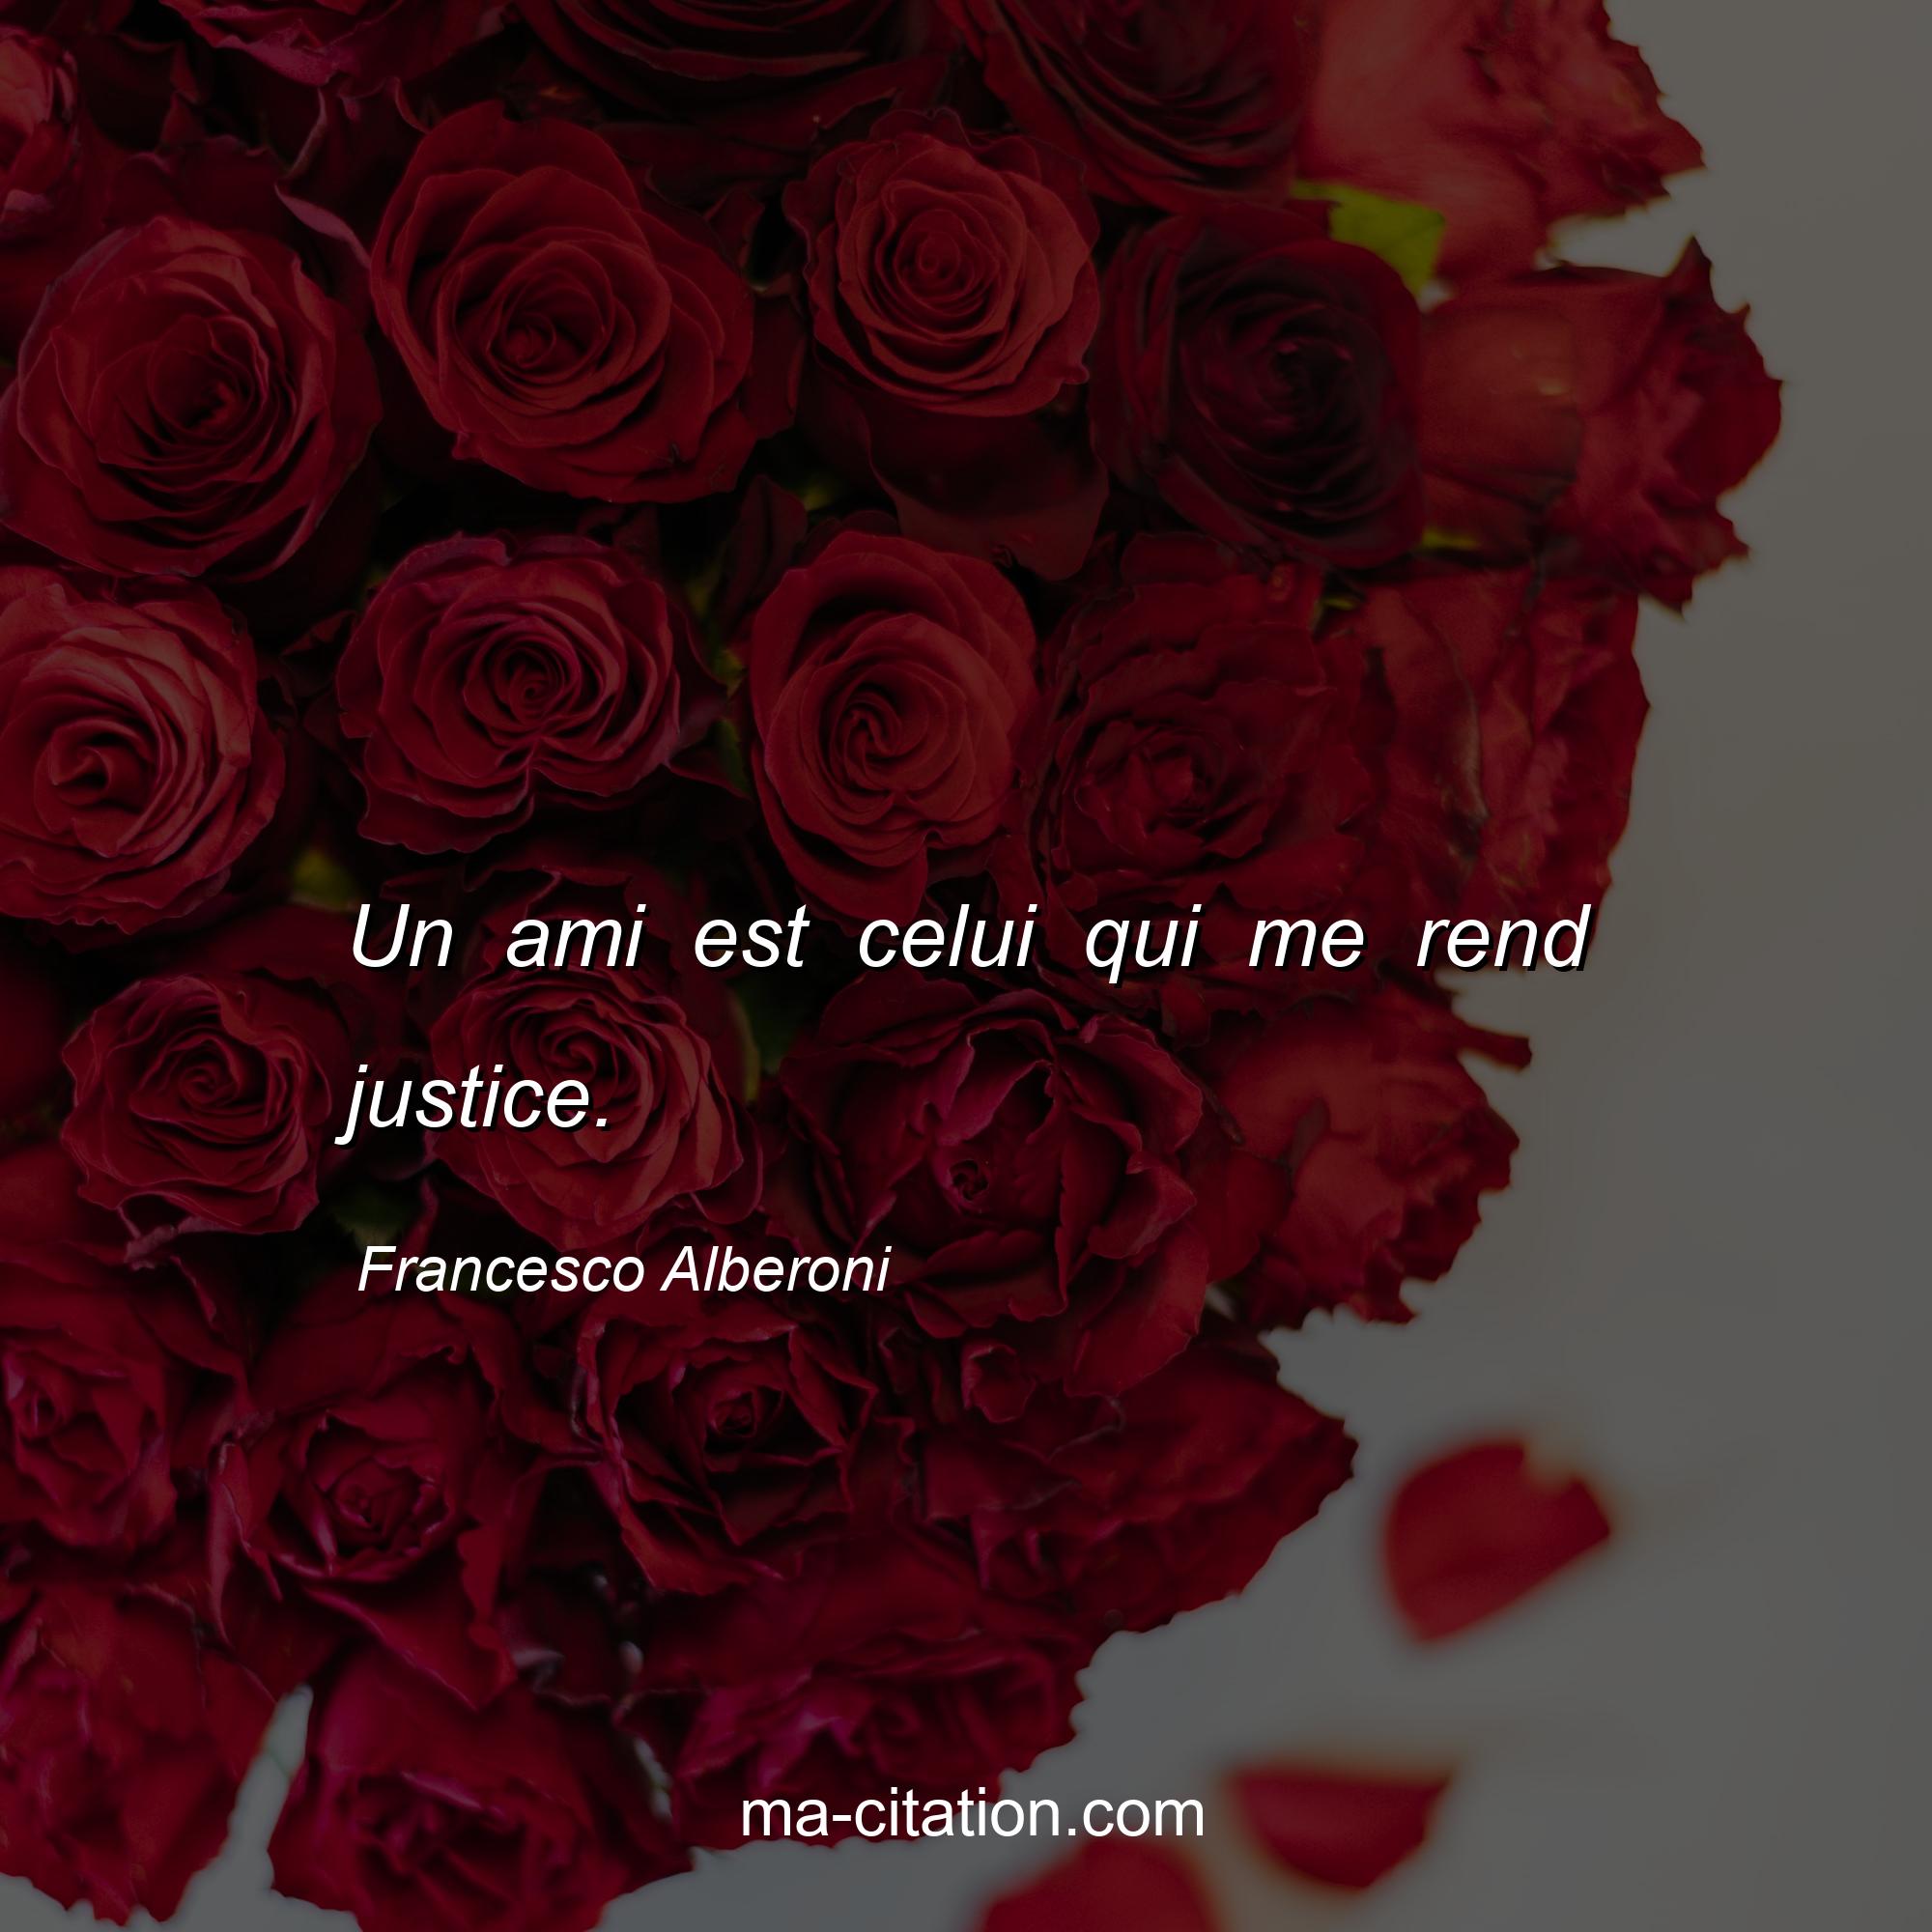 Francesco Alberoni : Un ami est celui qui me rend justice.